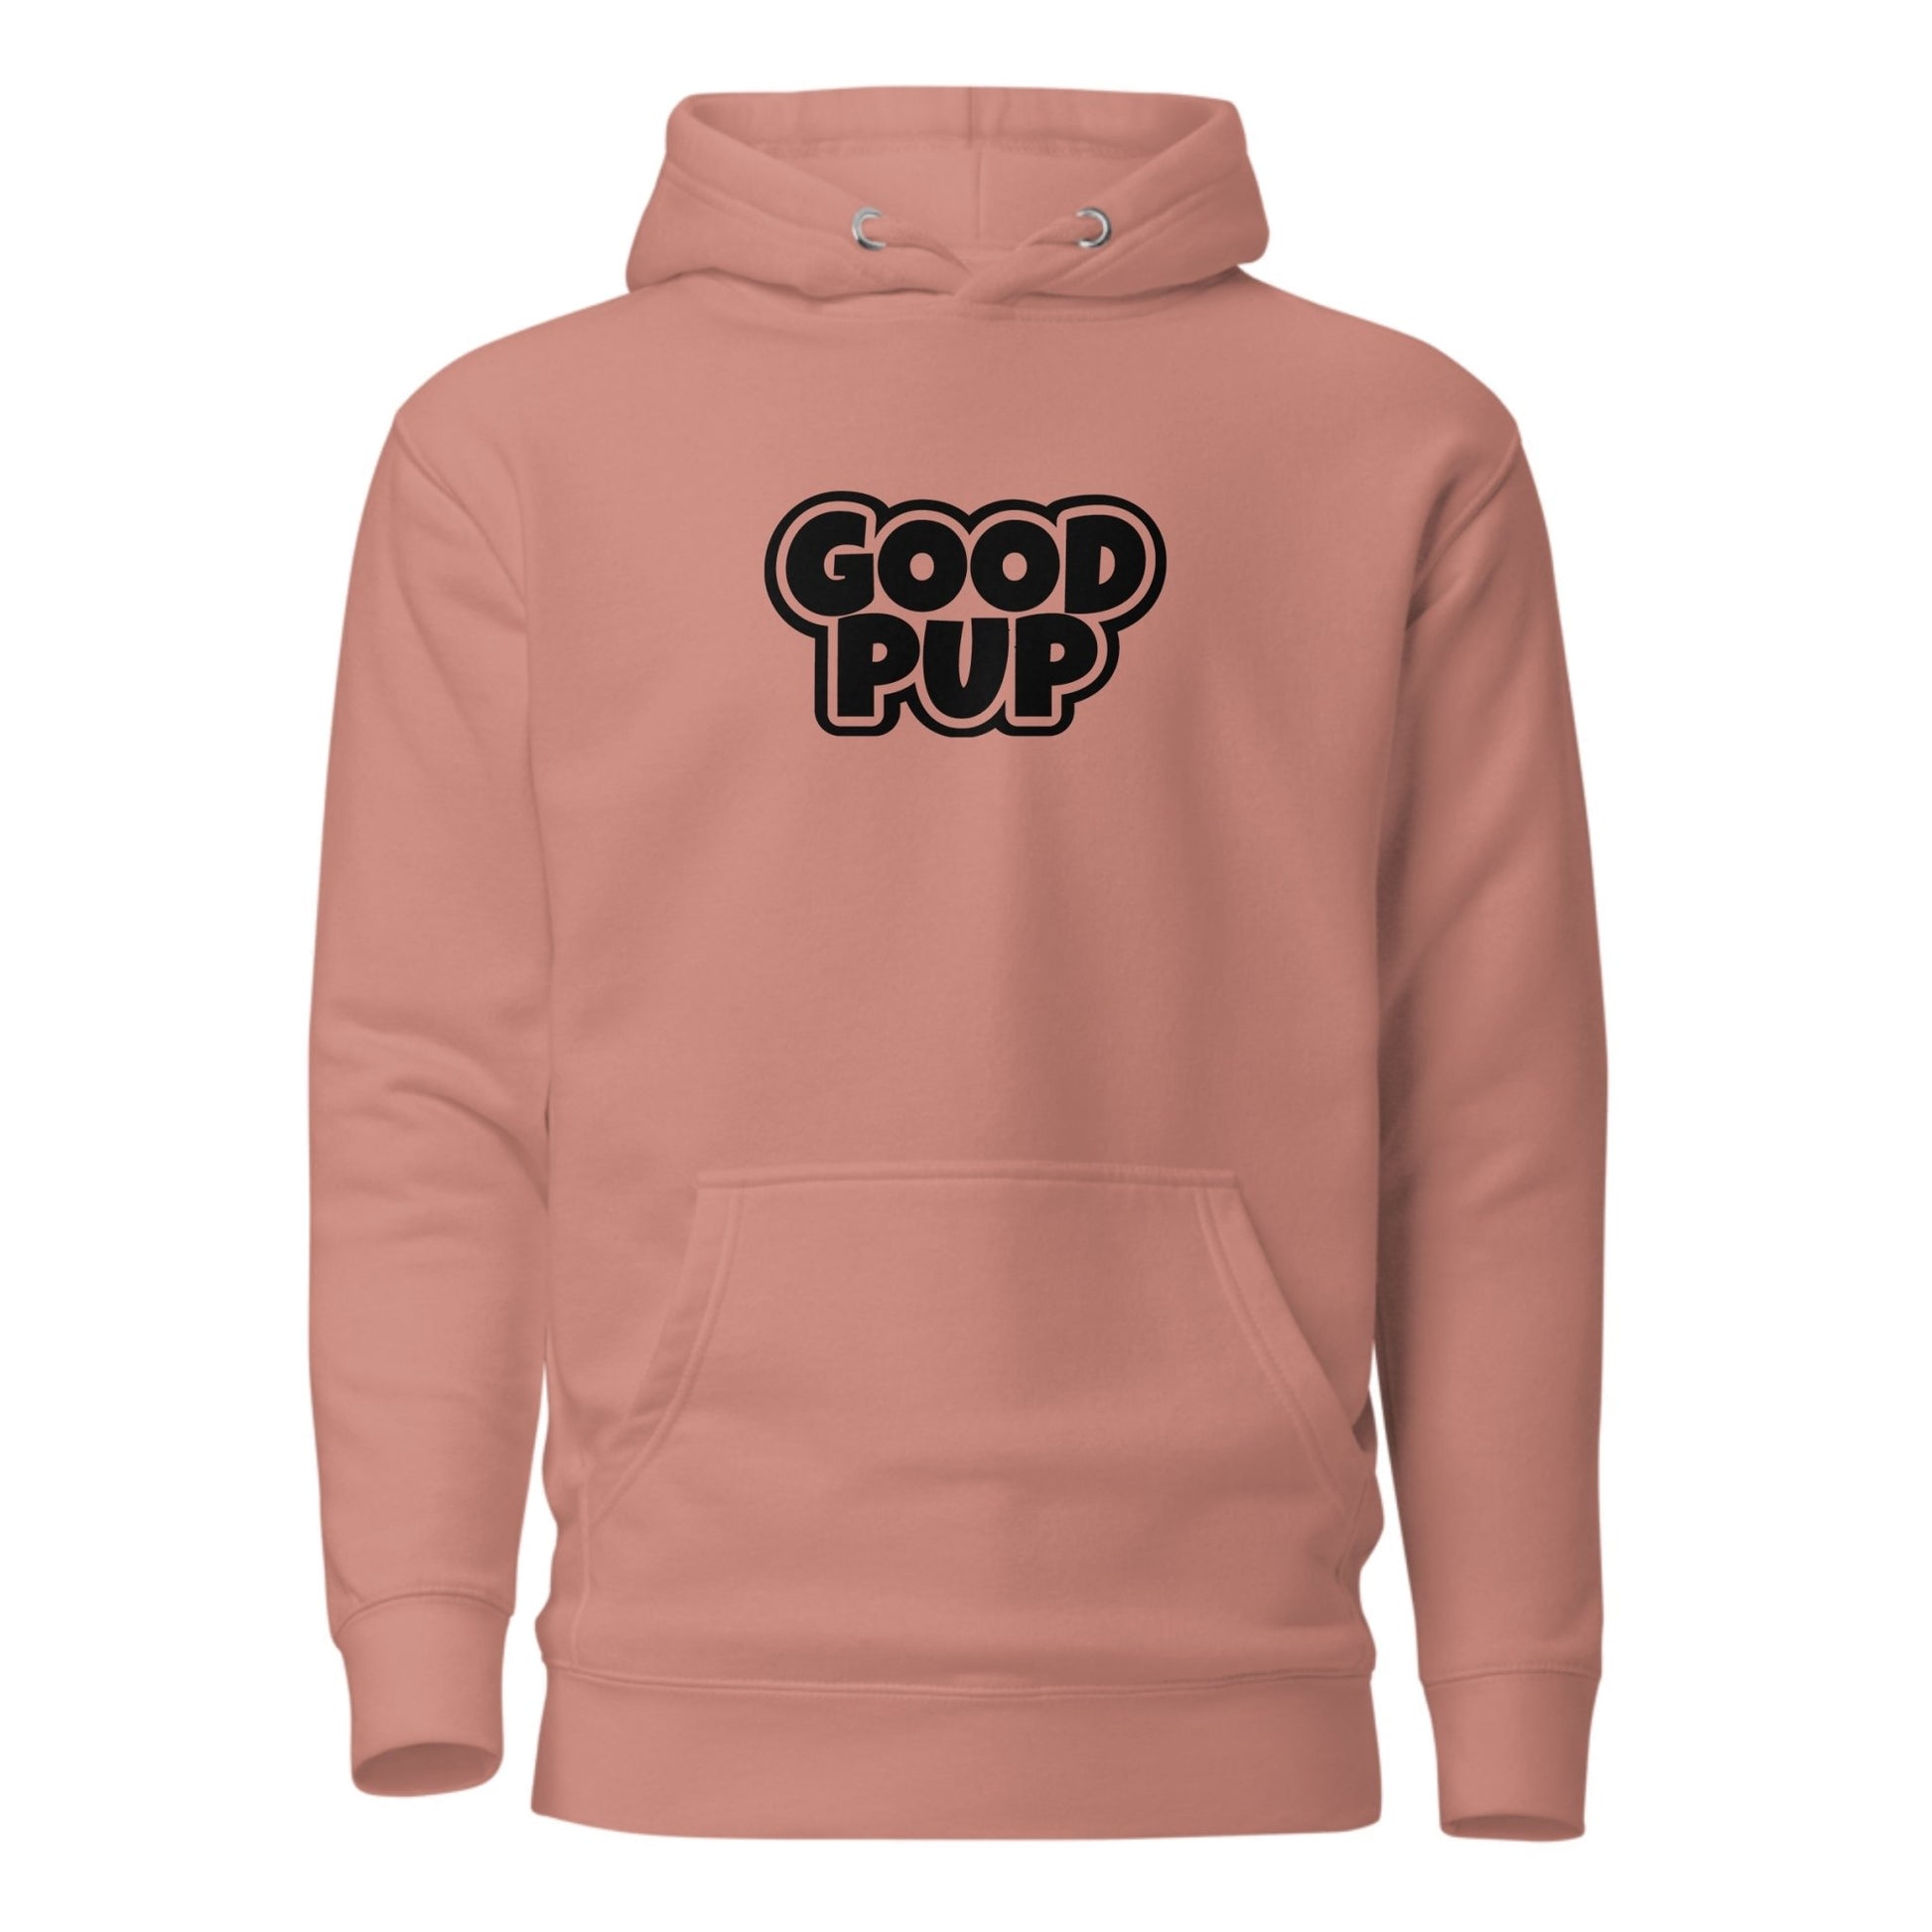 Good Pup - Unisex Hoodie - Multiple Colors - JetPup